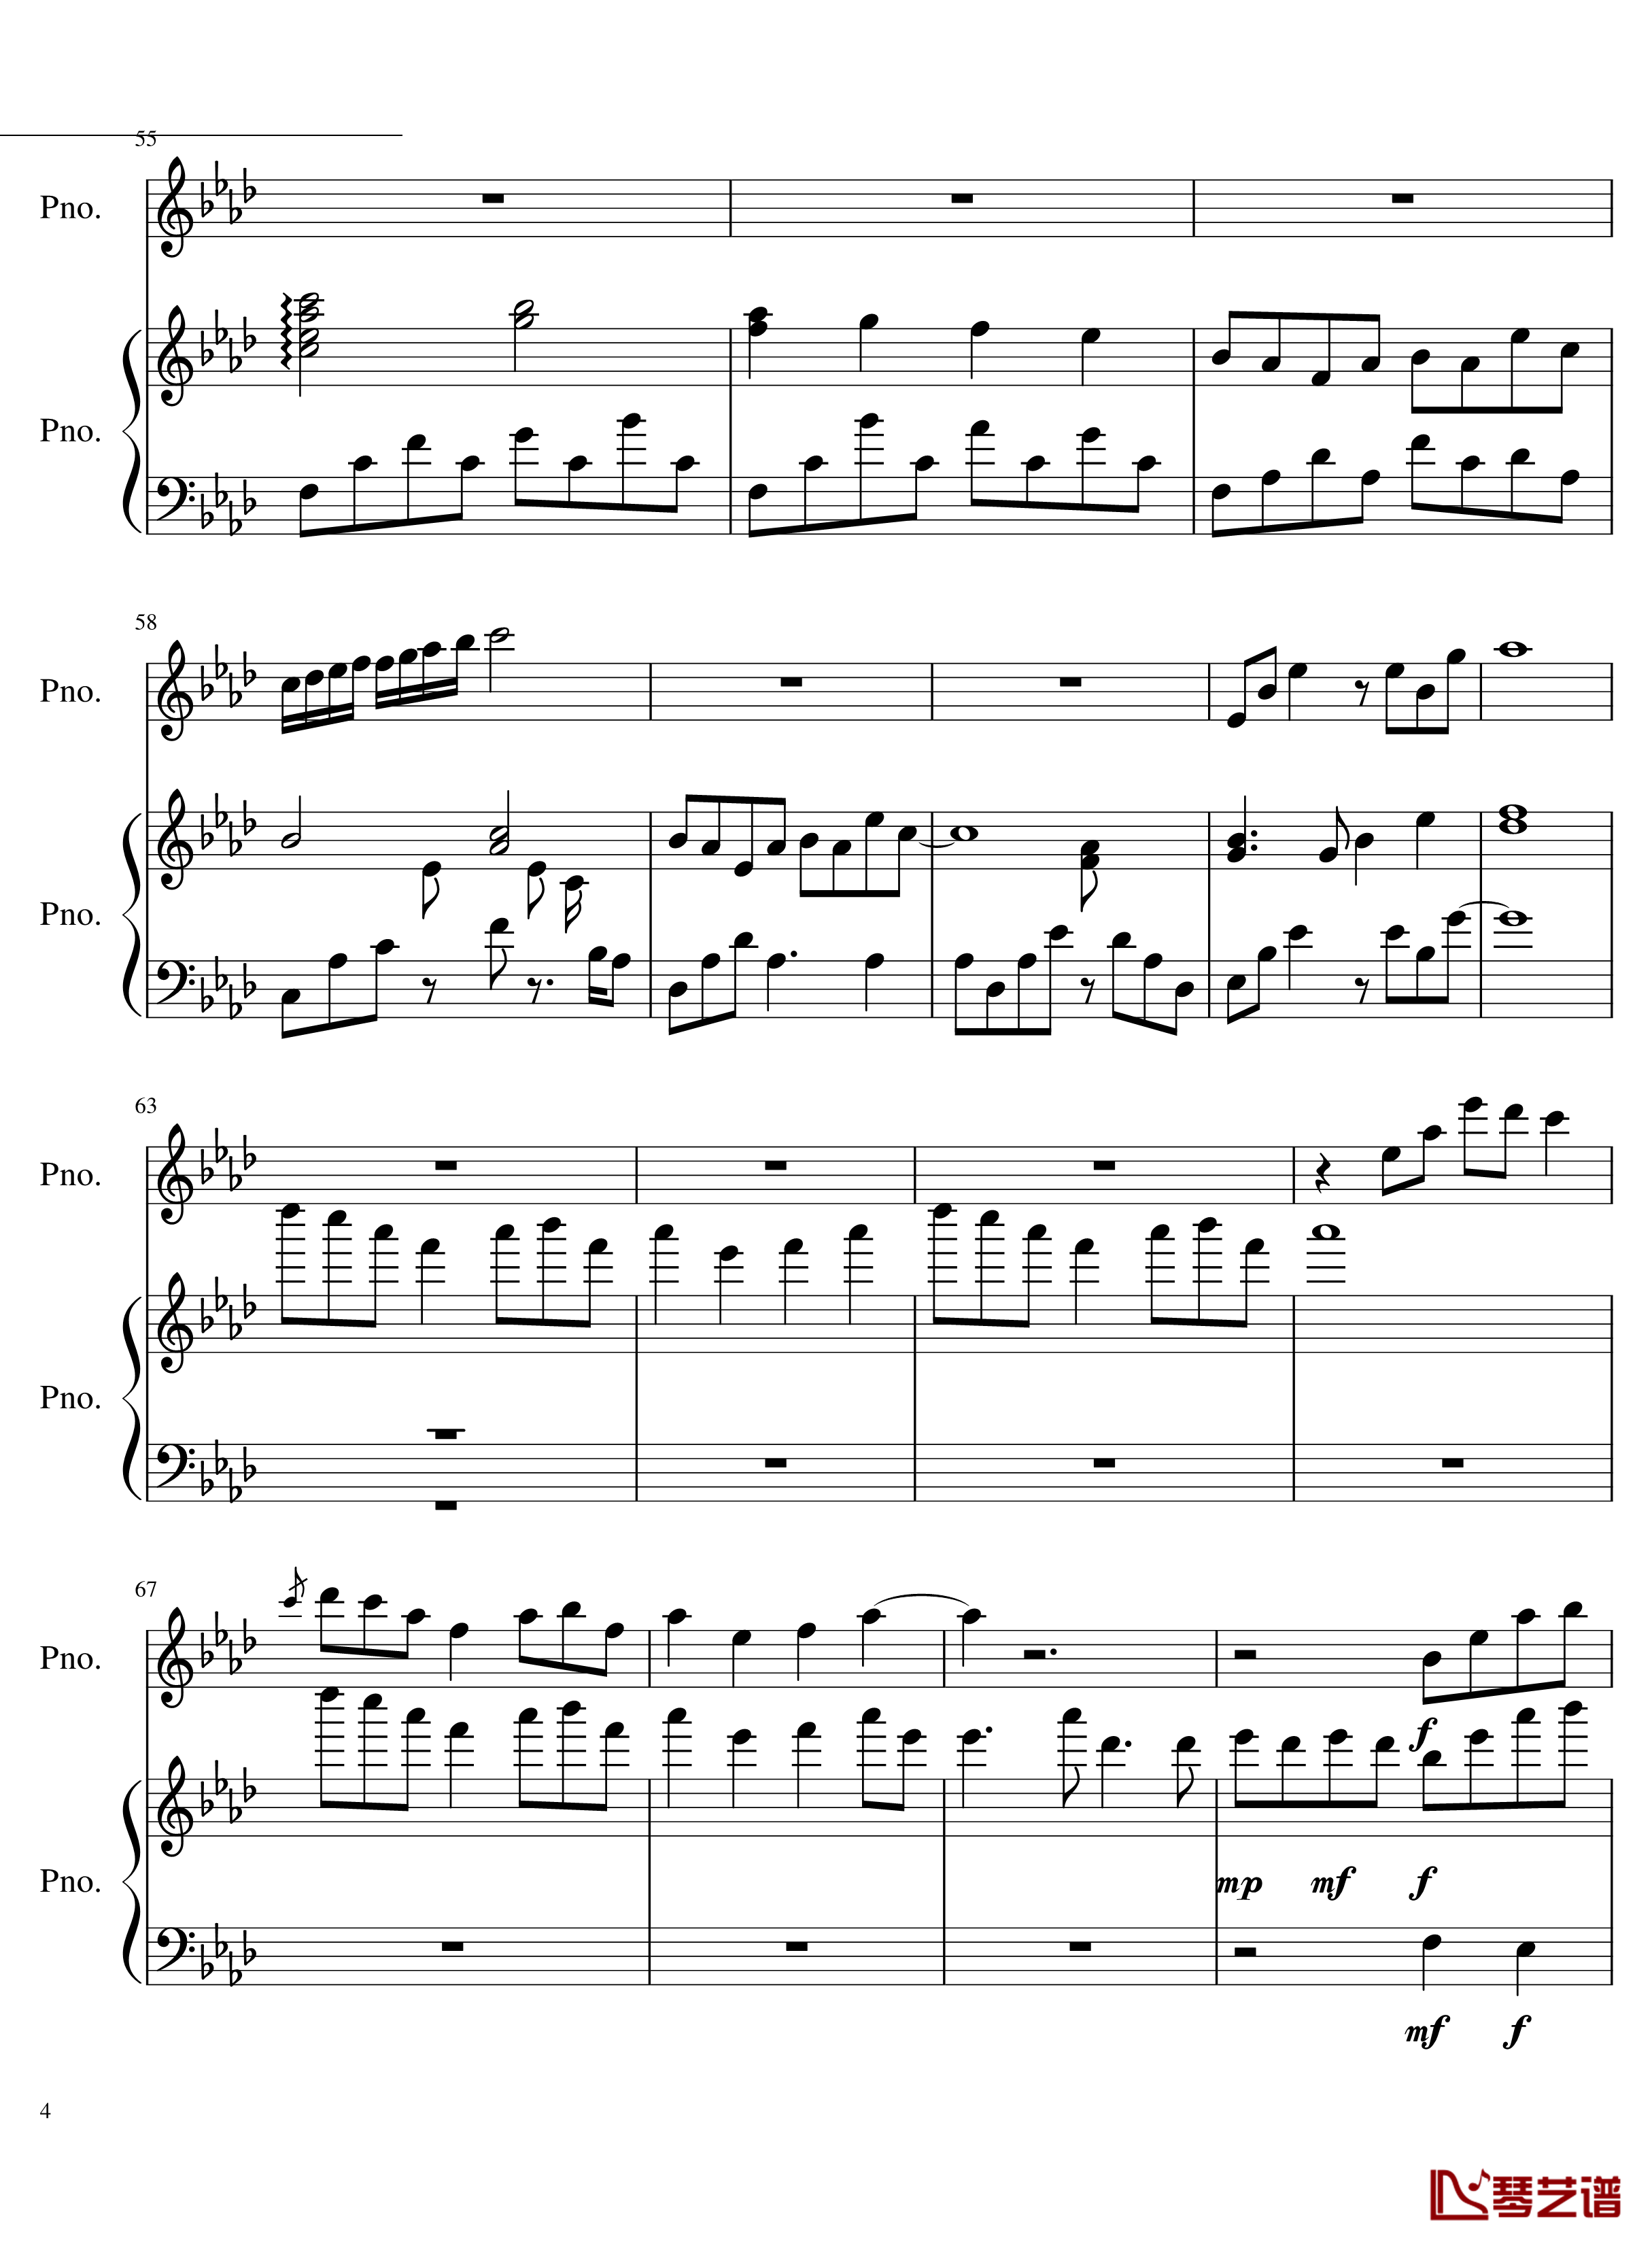 团子大家族钢琴谱-重制版 - Clannad OST-Clannad